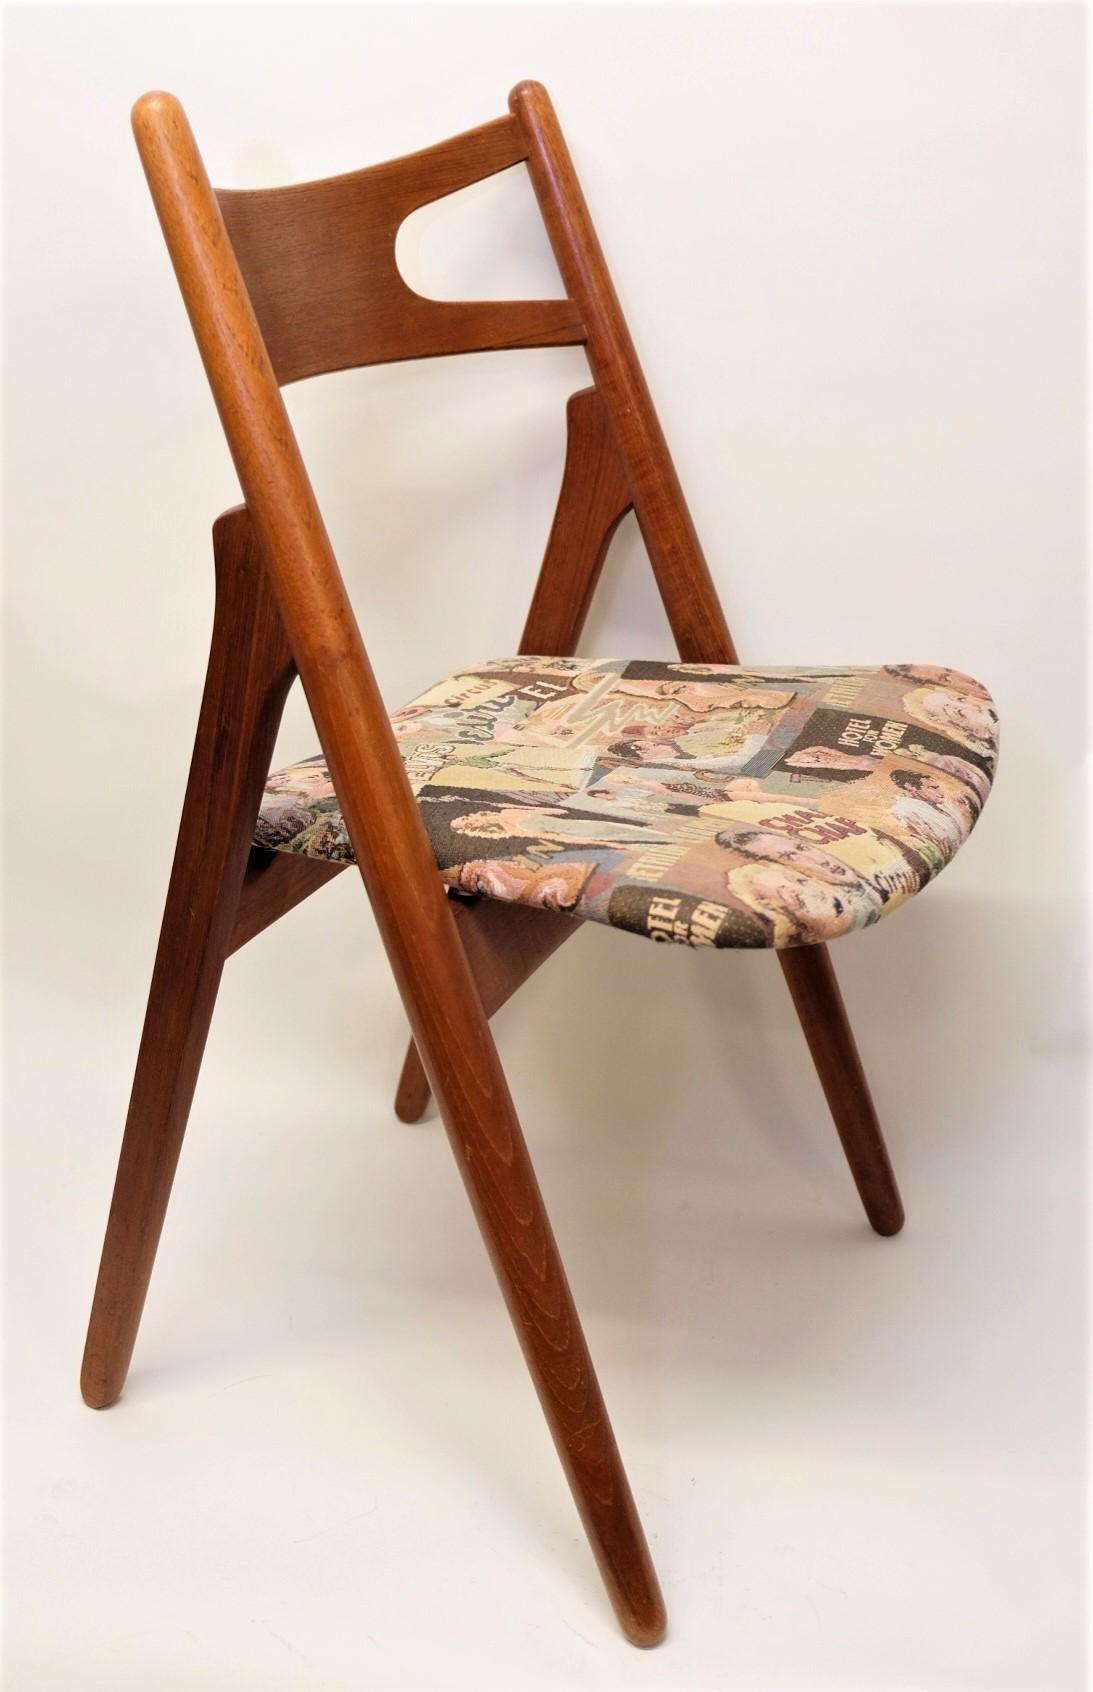 Danish Hans J. Wegner Mid-Century Sawbuck Dining Chair CH29 Teak for Carl Hansen & Son For Sale